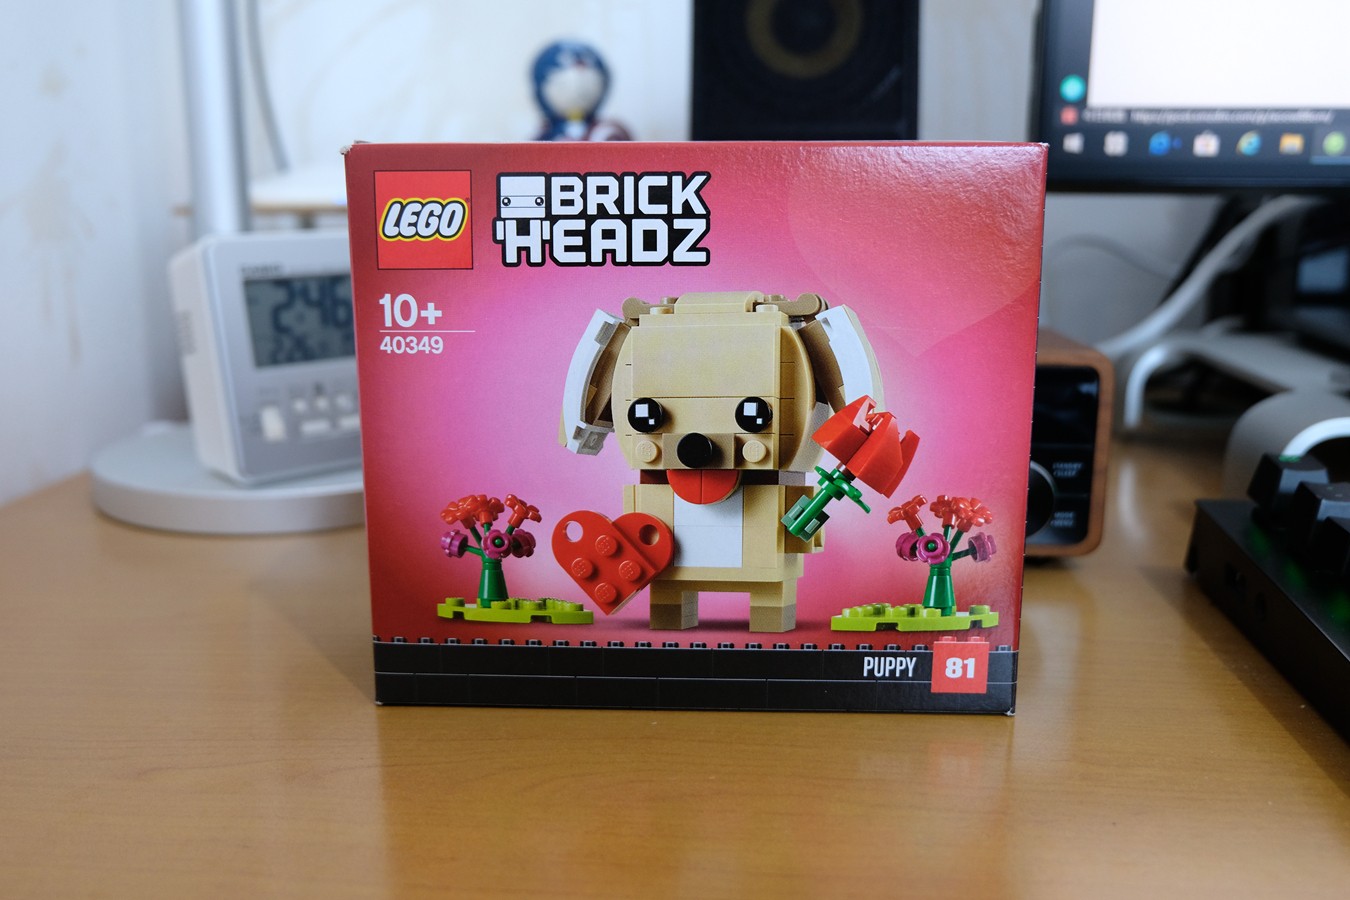 Lego乐高方头仔系列情人节小狗体验 聚超值